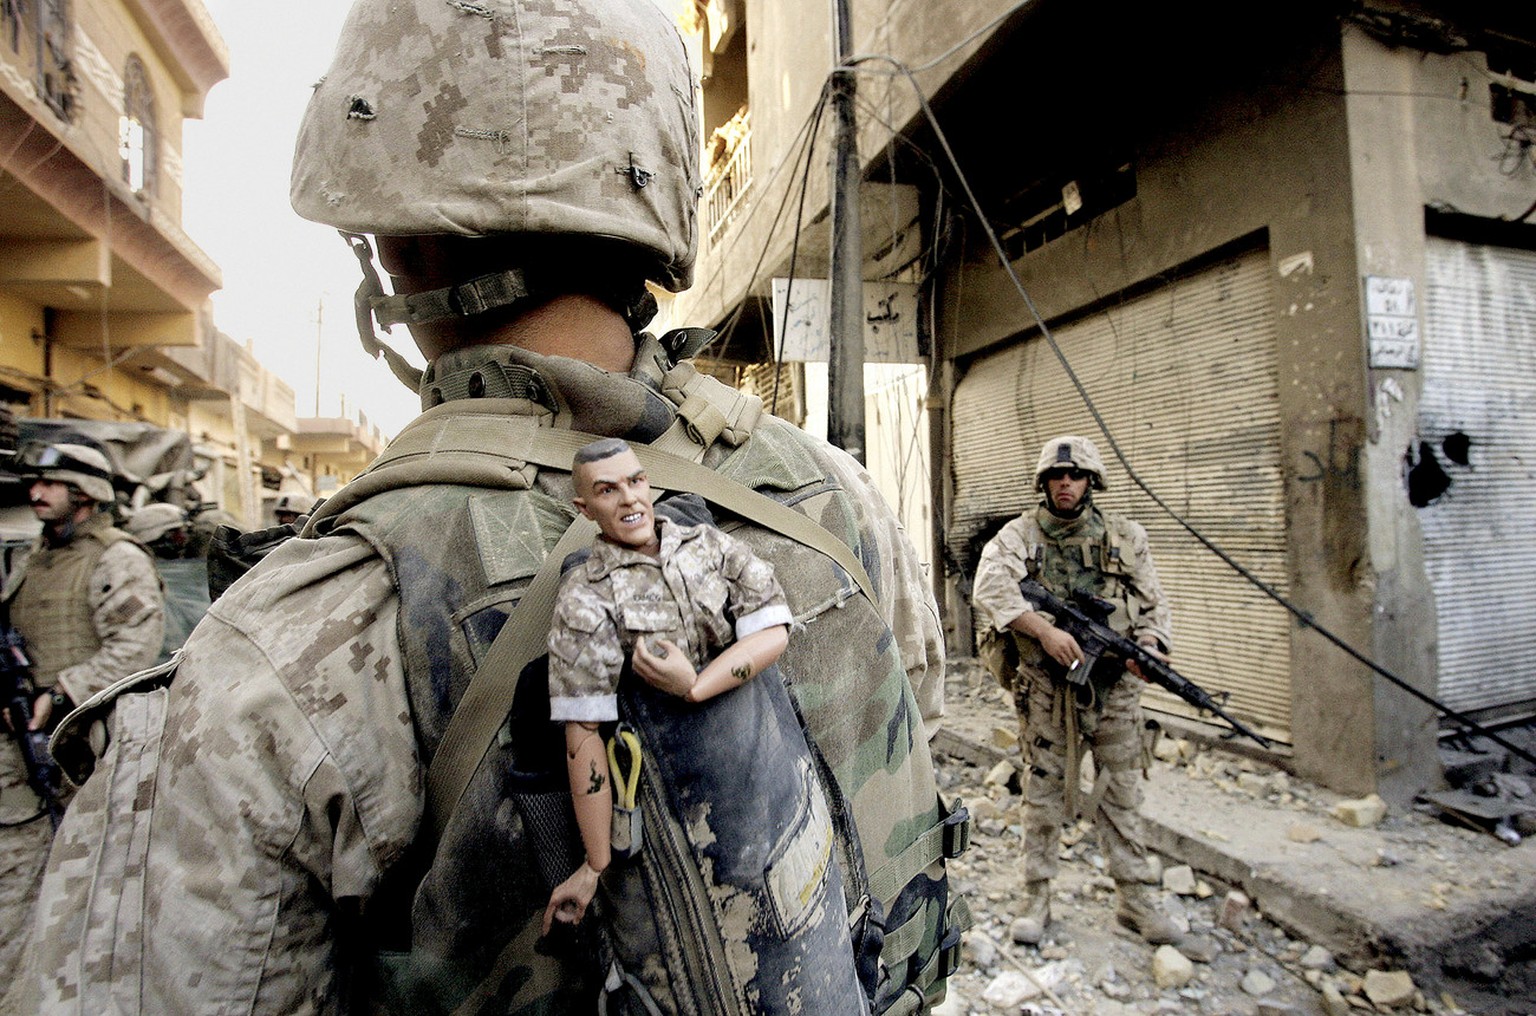 Mit diesem Bild aus dem Irakkrieg 2004 gewann Anja Niedringhaus zusammen mit einem AP-Fotografenteam 2005 den Pulitzer-Preis.